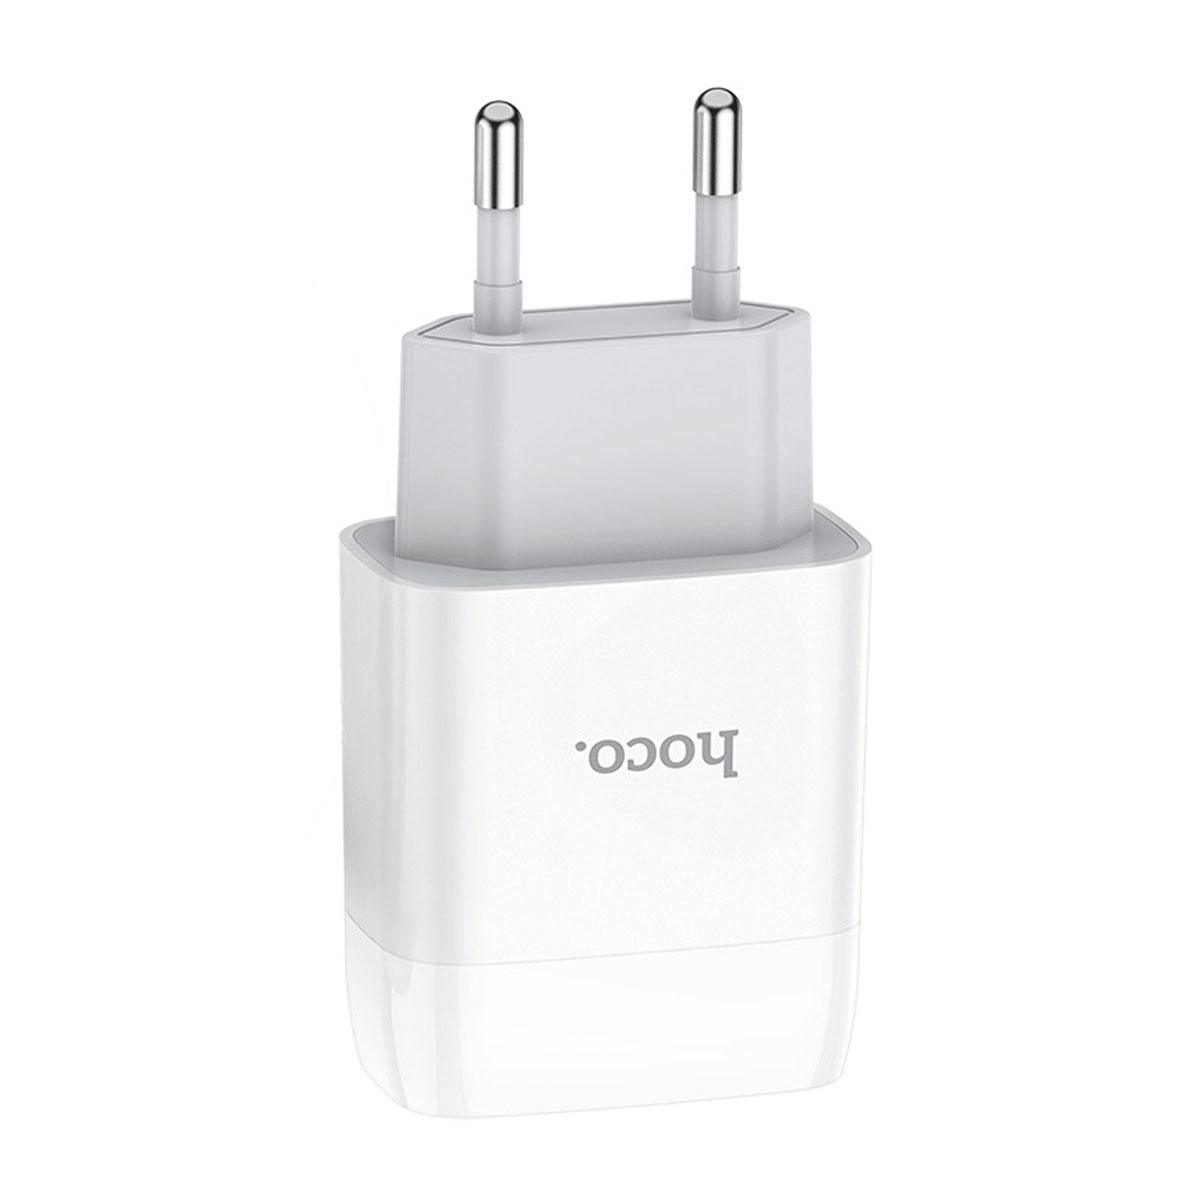 СЗУ (Сетевое зарядное устройство) HOCO C73A Glorious, 2 USB, цвет белый